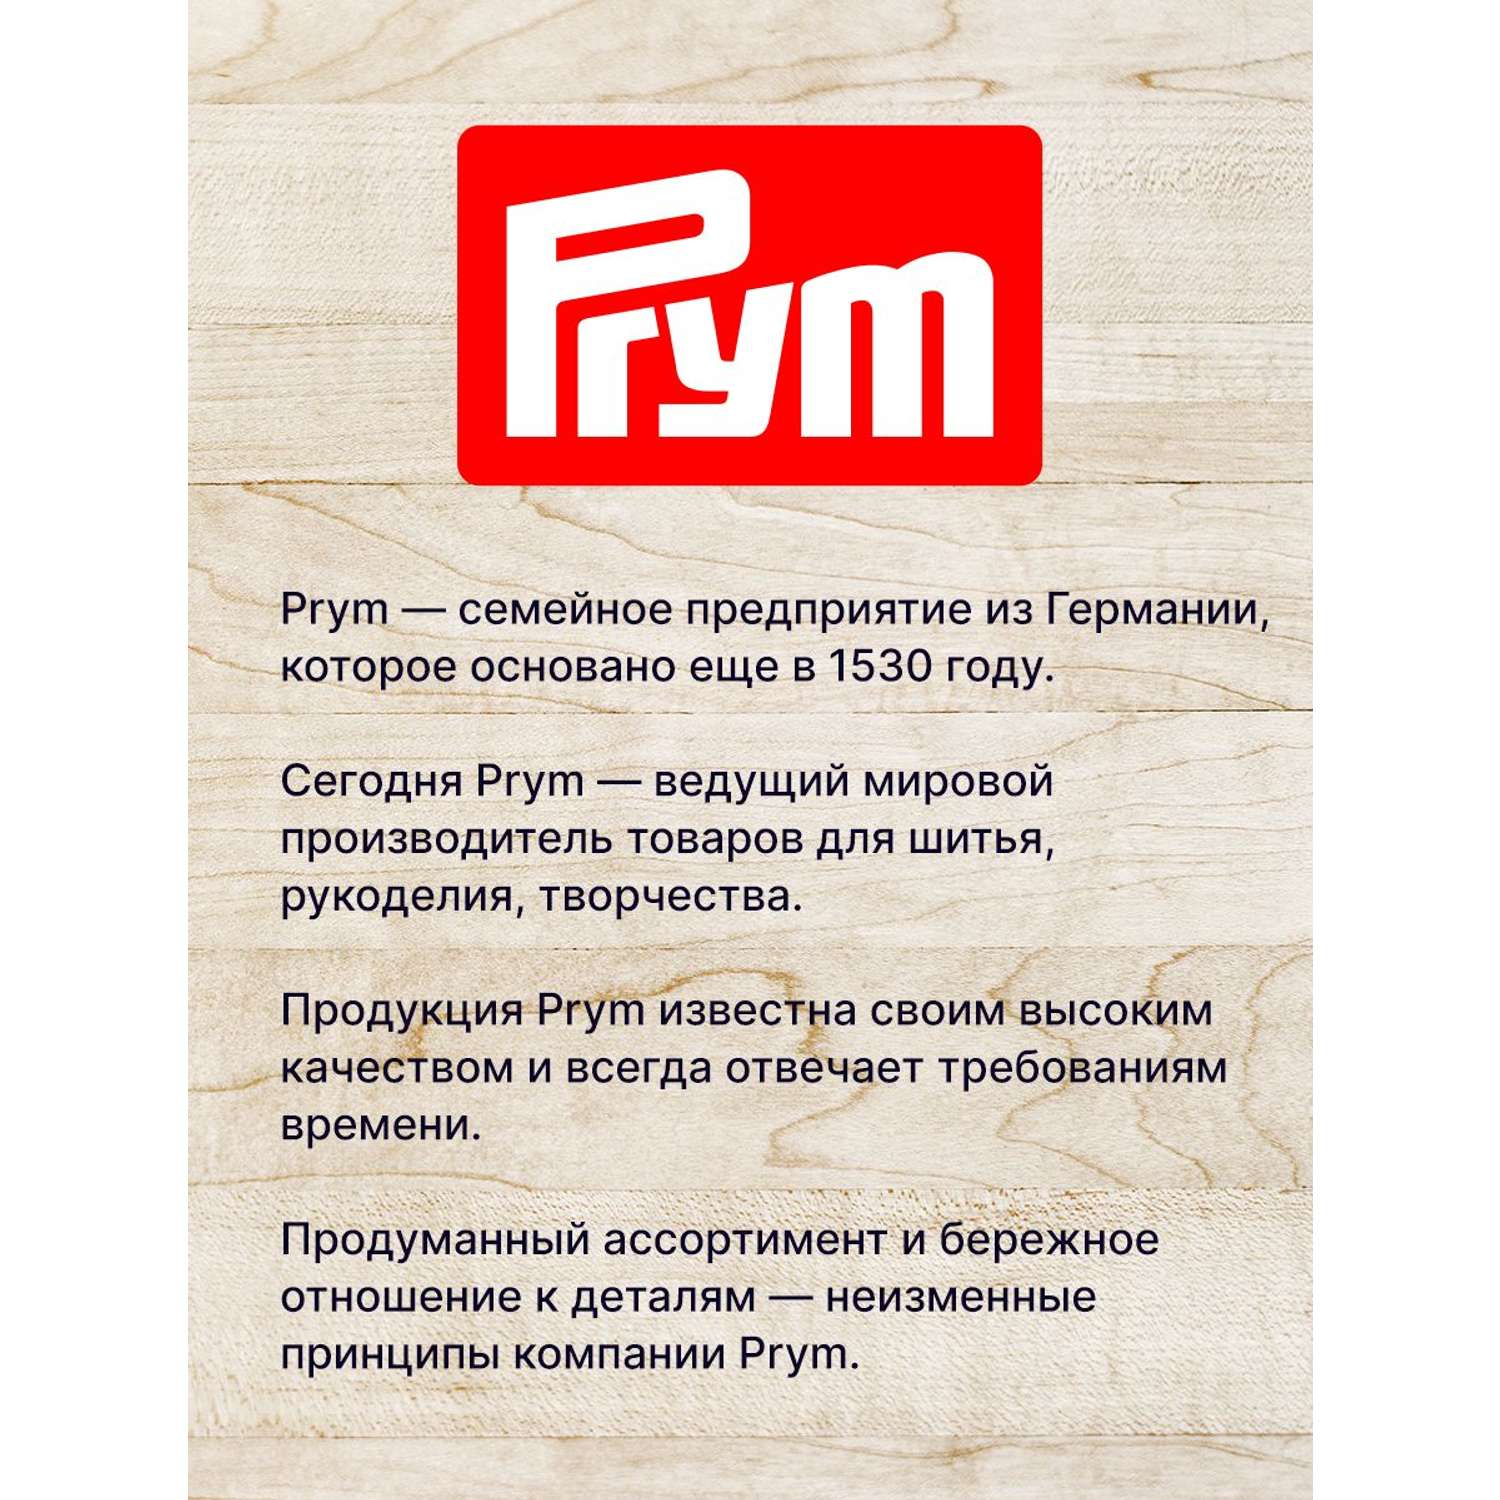 Набор для маркировки Prym белья одежды и постельных принадлежностей лента 3 м трафарет и маркер 611793 - фото 5